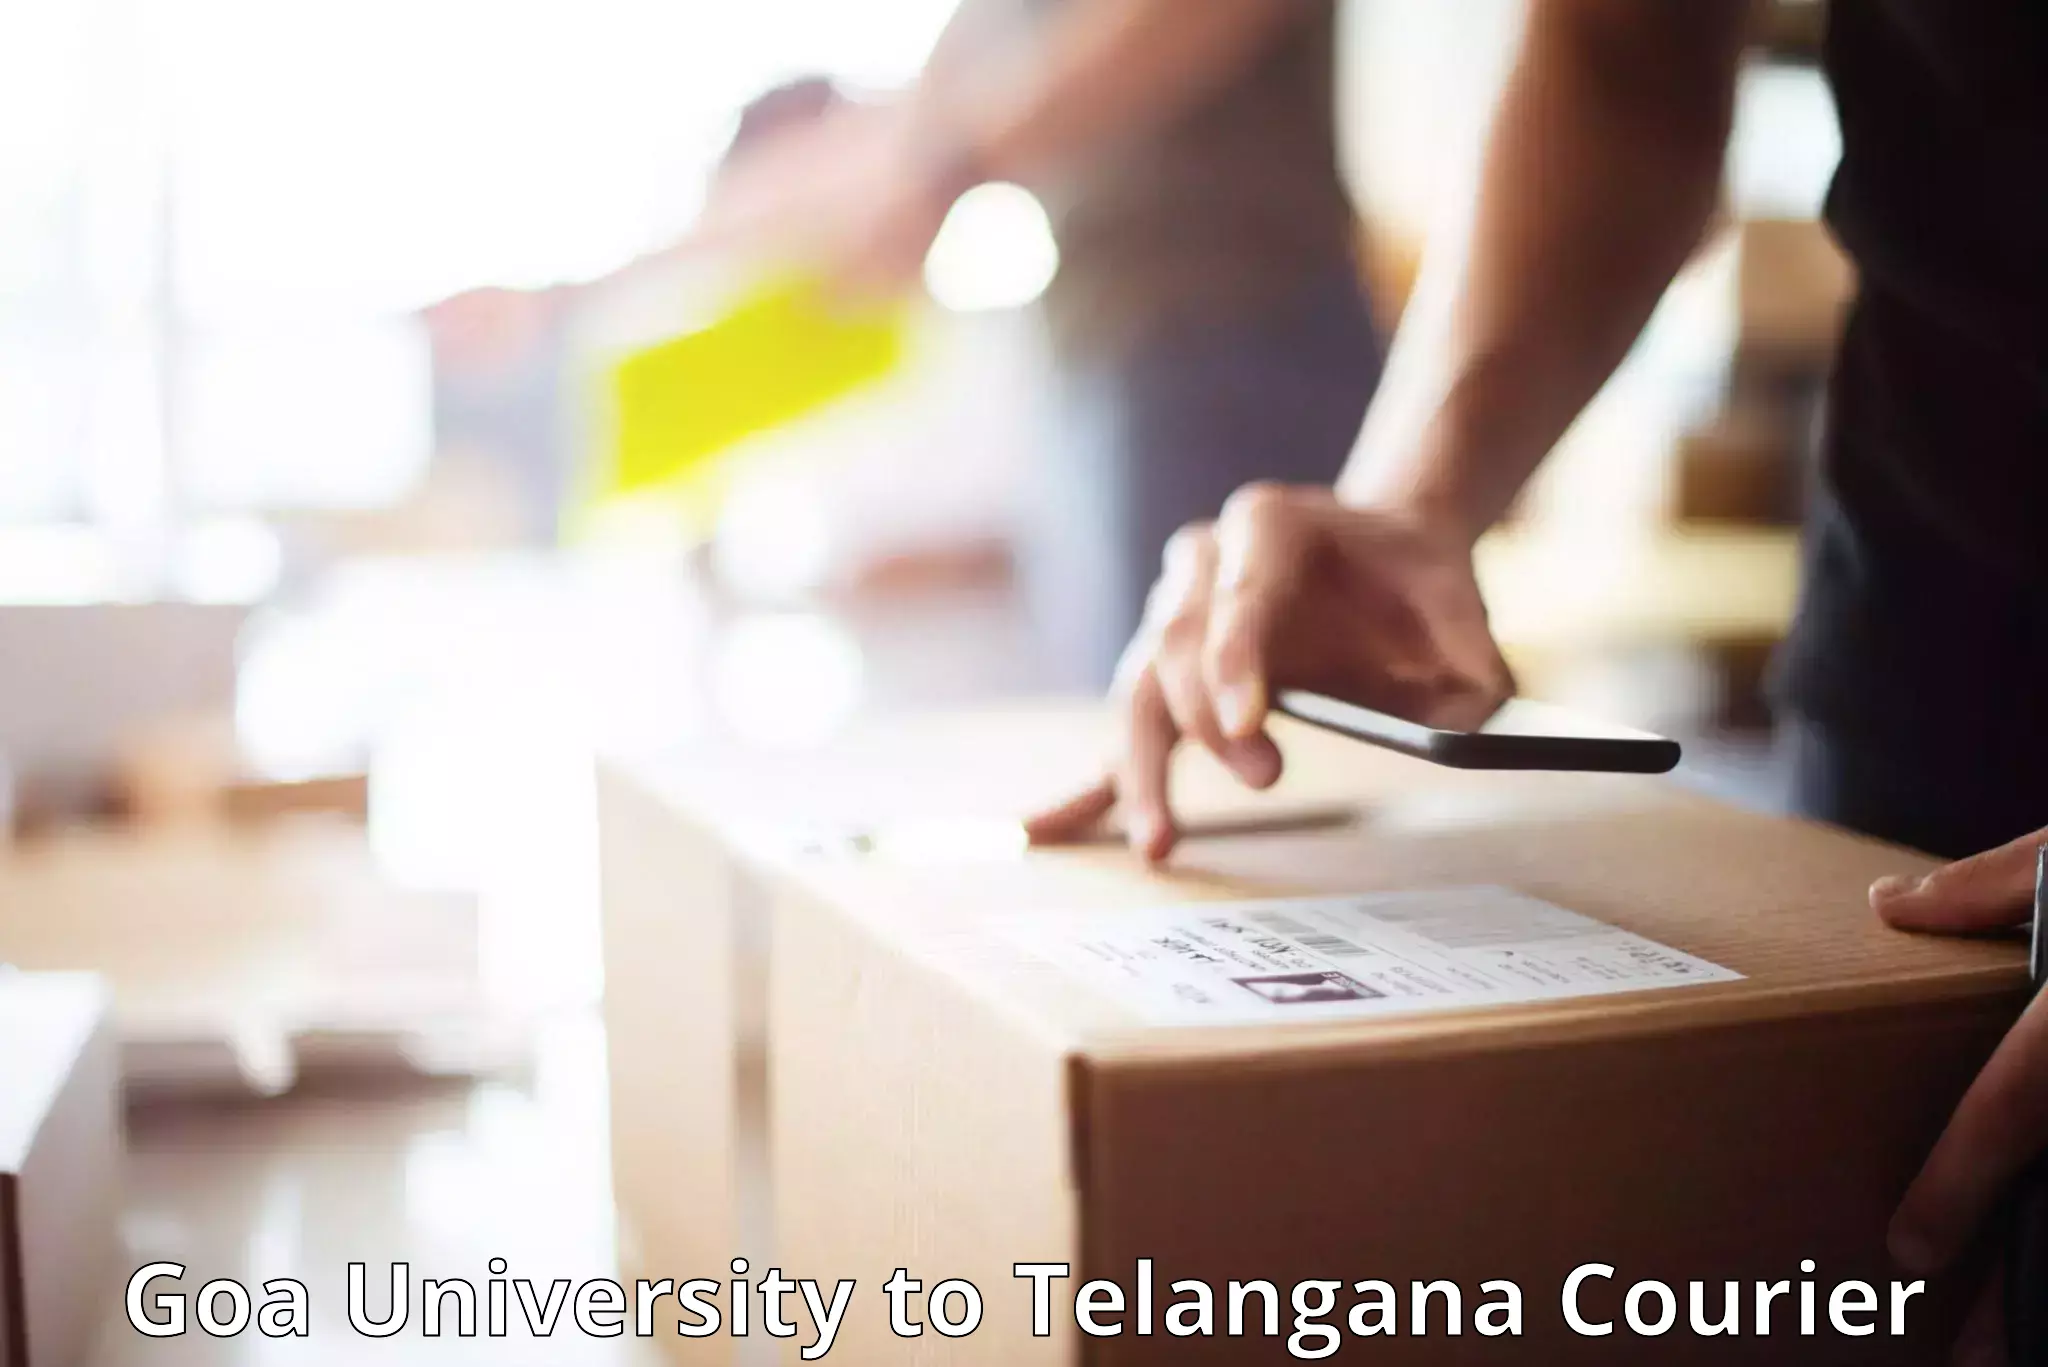 Door-to-door baggage service Goa University to Dahegaon